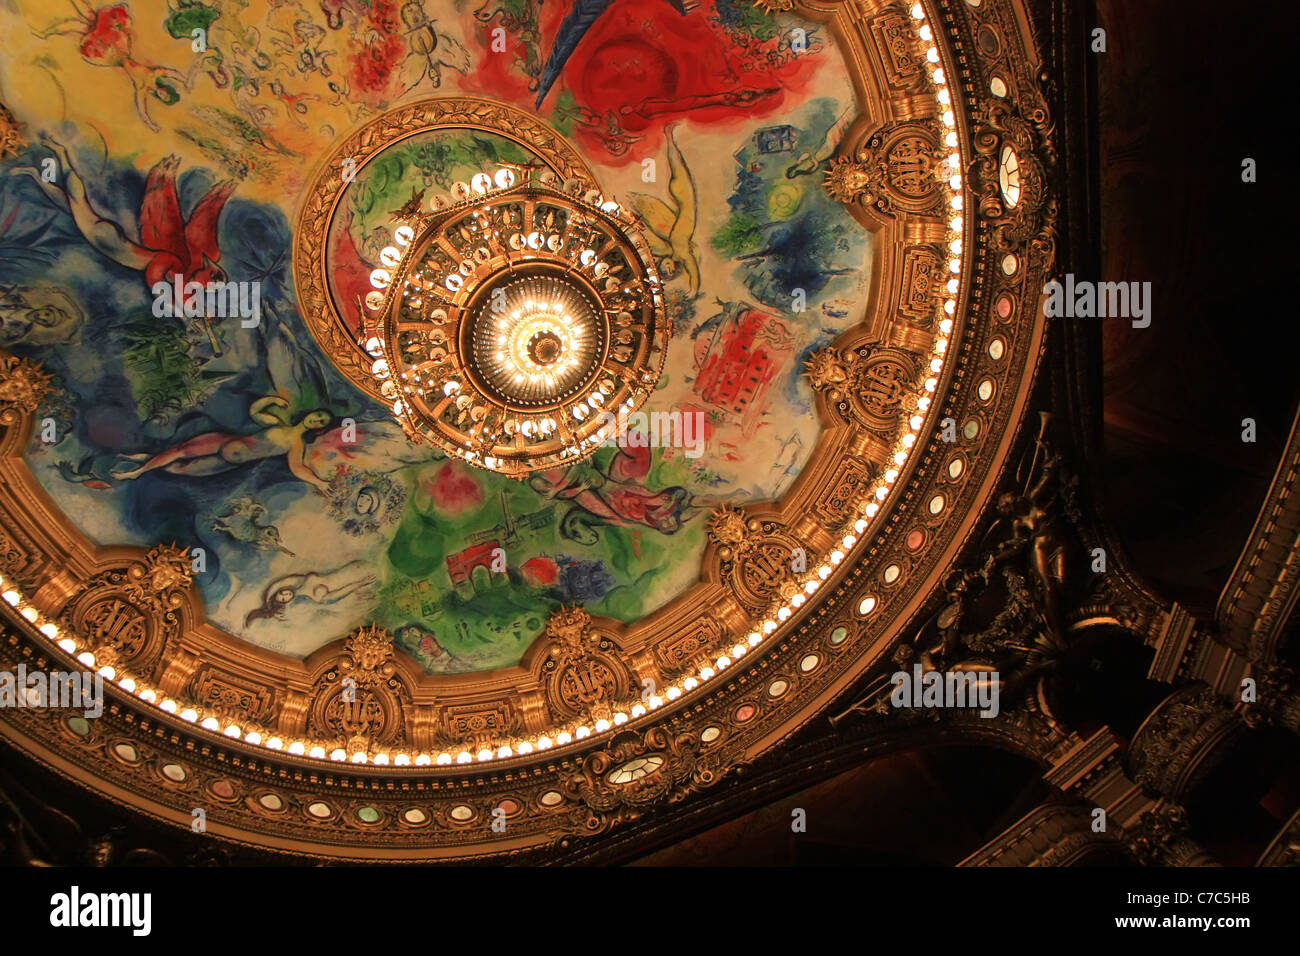 Lustre magnifique plafond peint et de l'auditorium de l'Opéra Garnier, Paris, France Banque D'Images